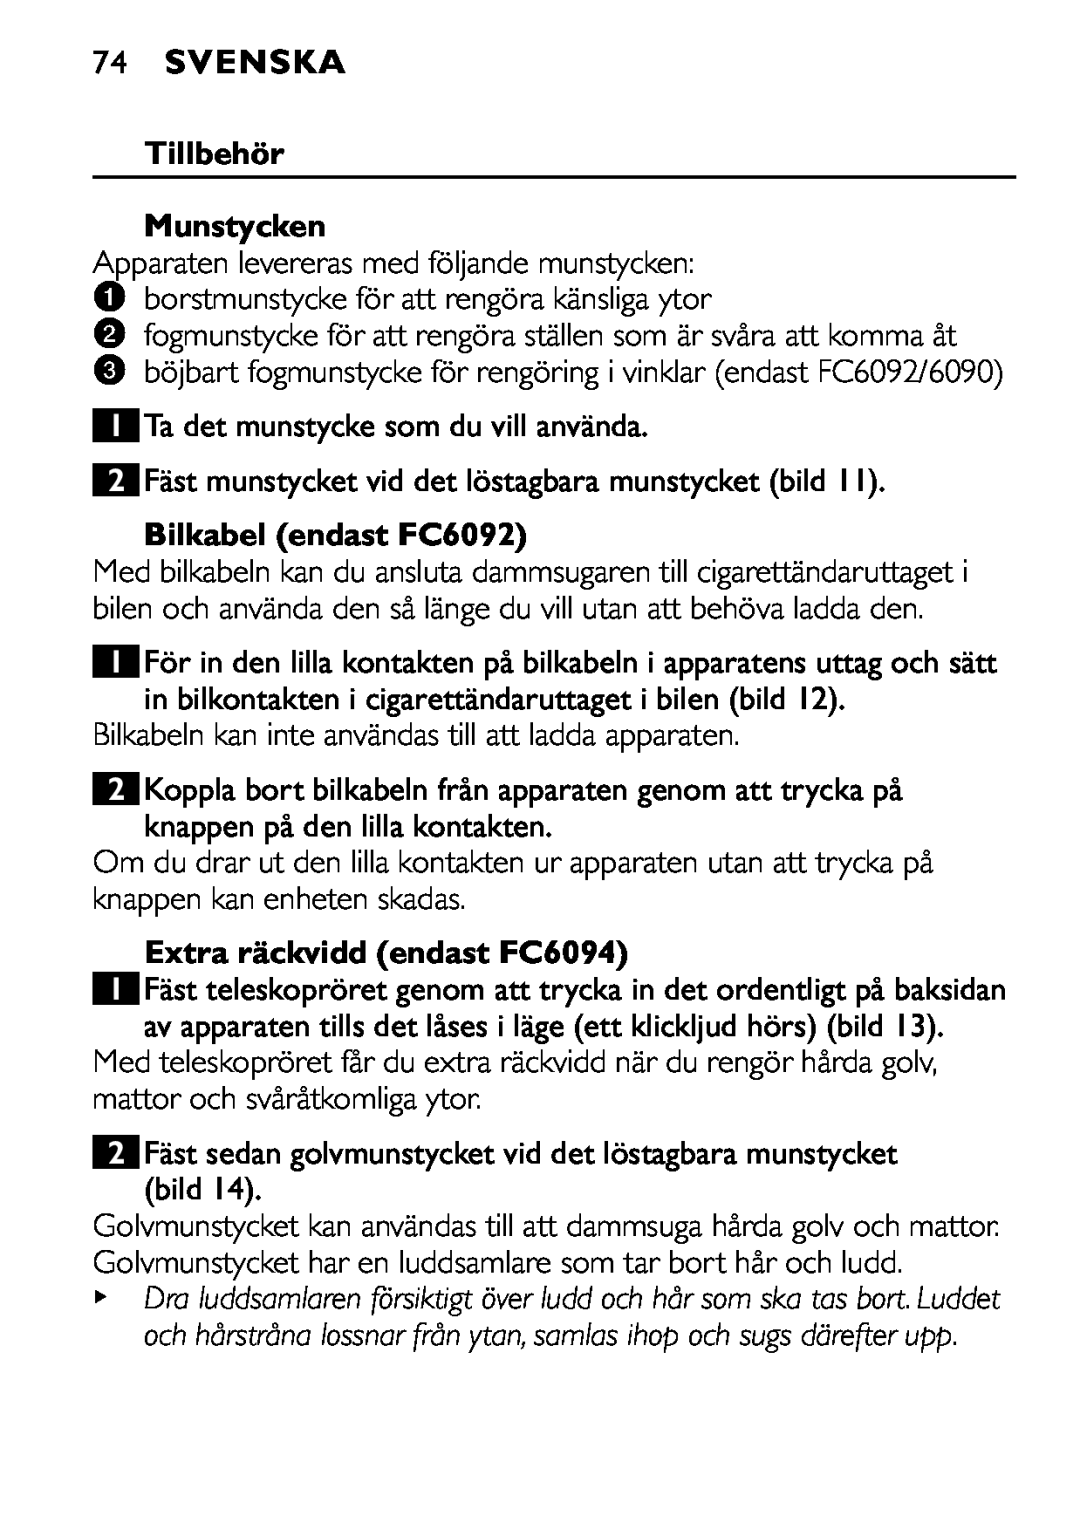 Philips FC6090 manual 74SVENSKA, Tillbehör Munstycken, Bilkabel endast FC6092, Extra räckvidd endast FC6094 